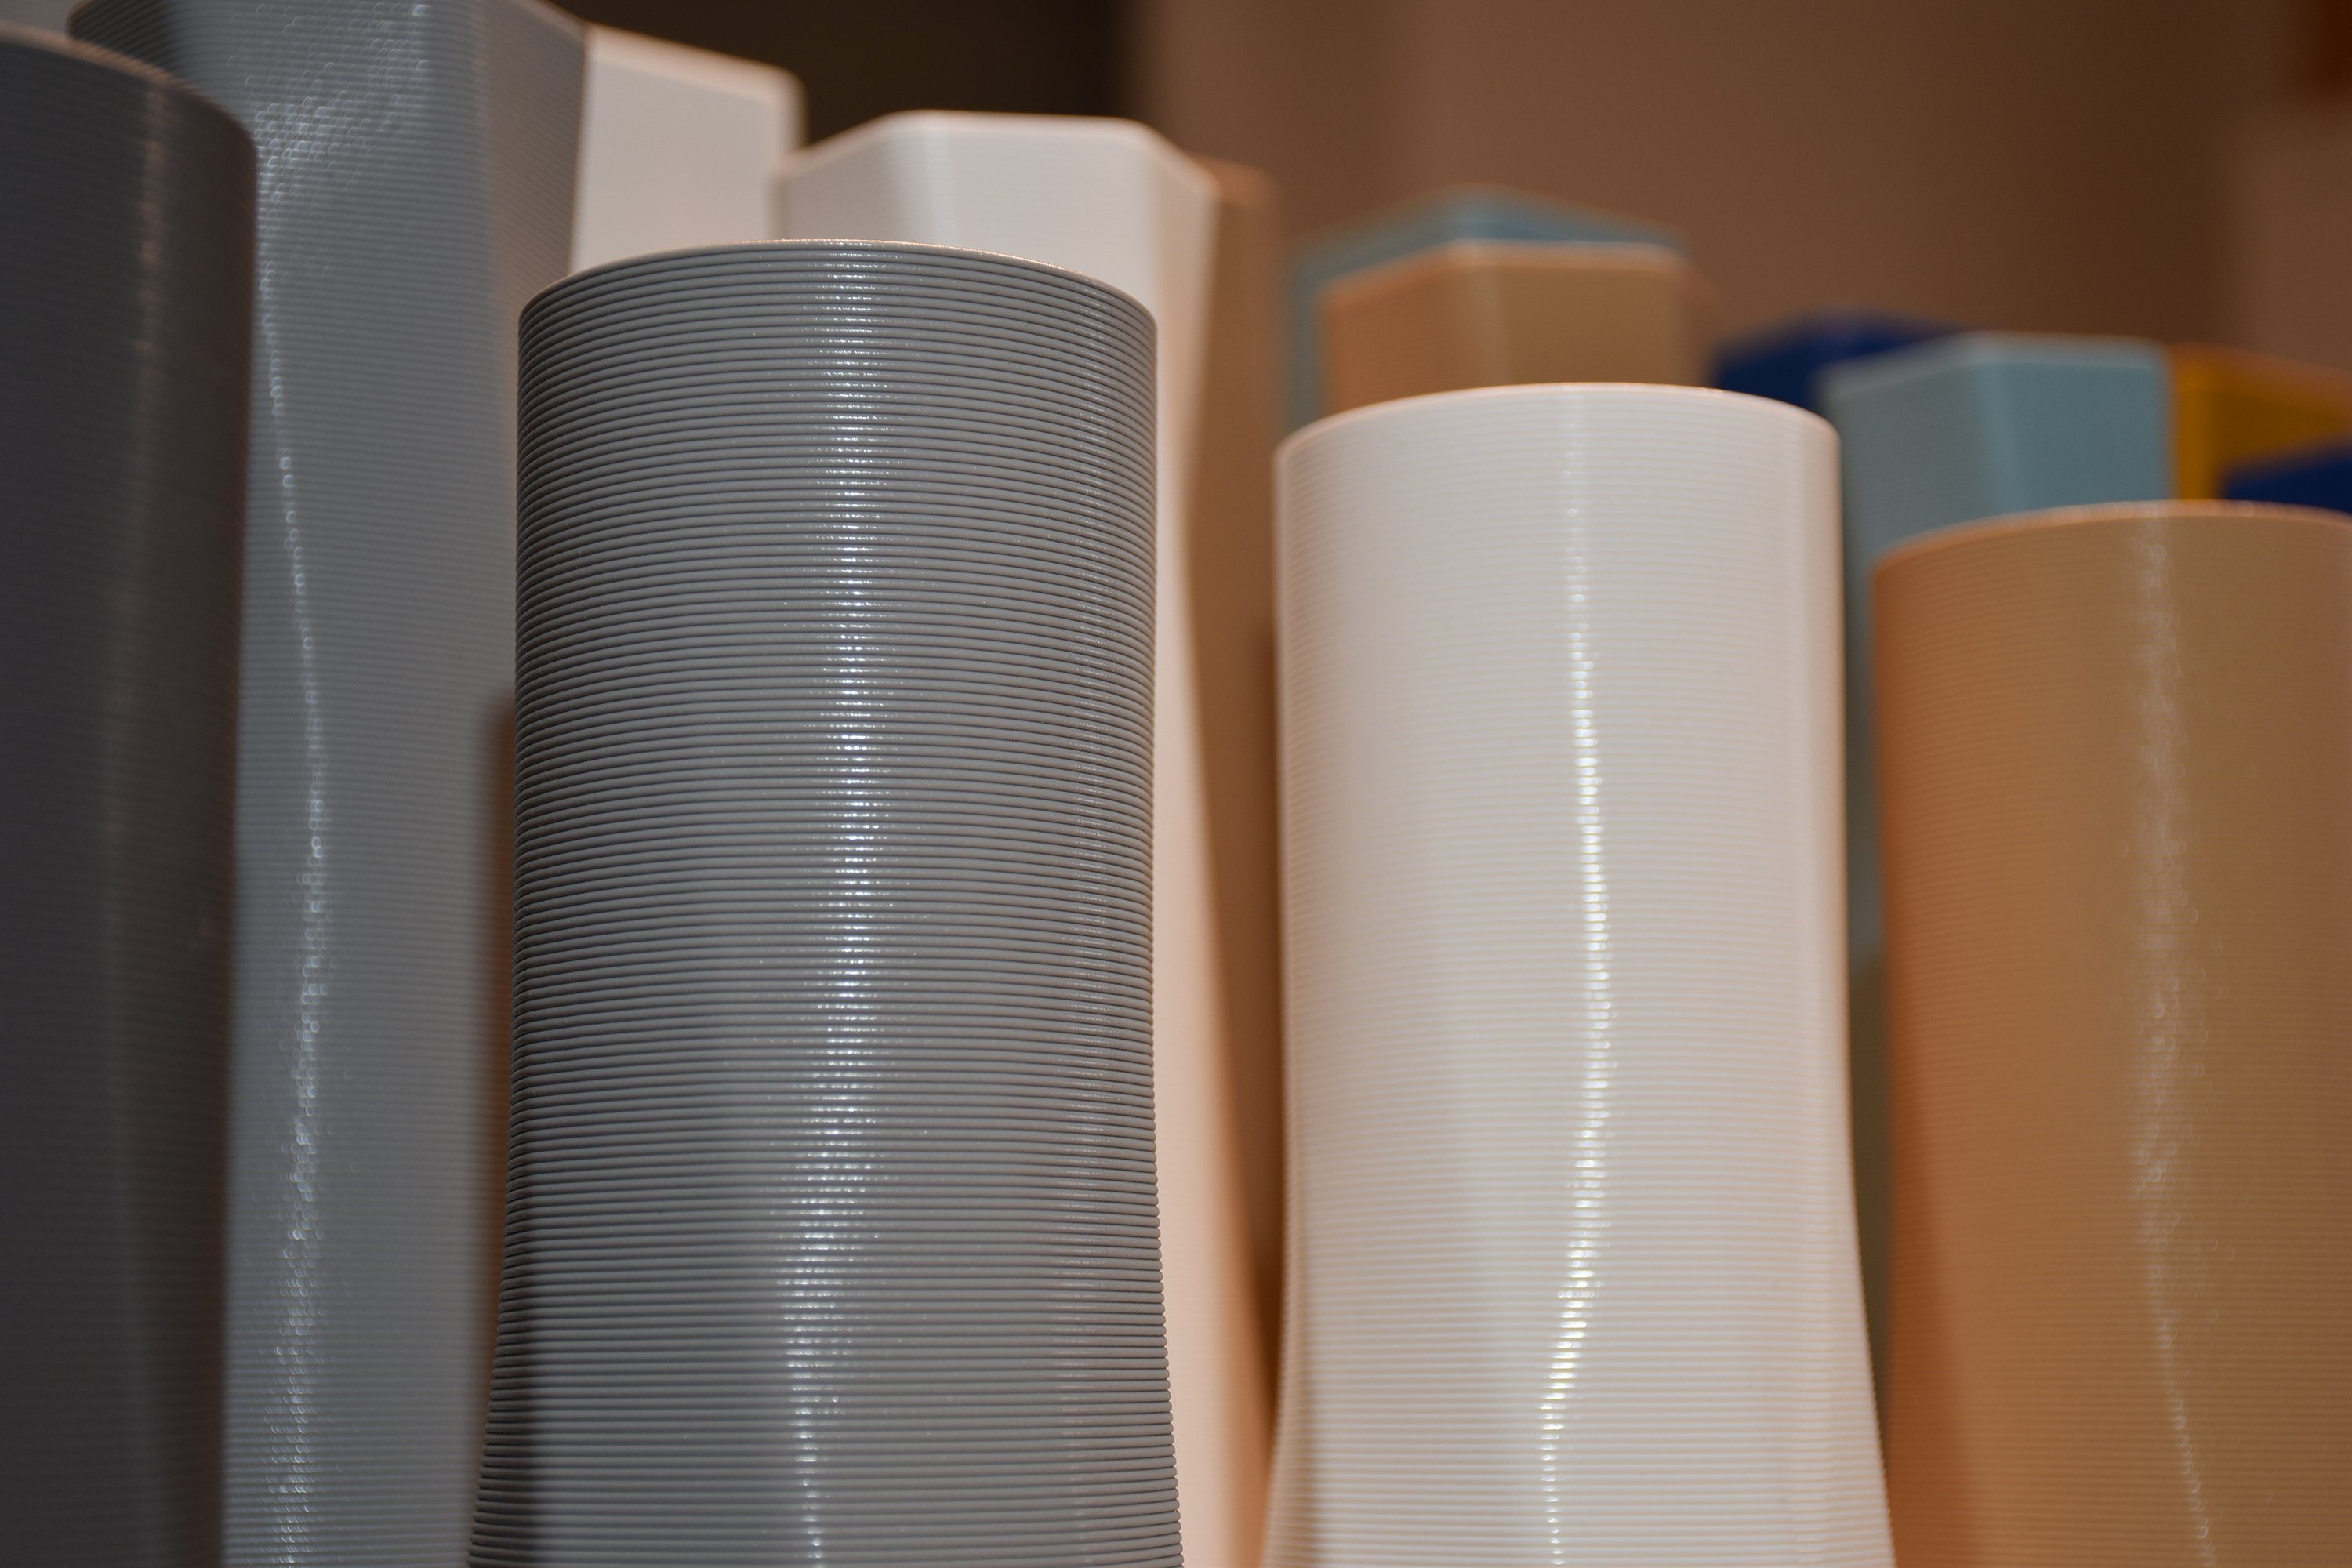 Leichte innerhalb the square Materials - 100% Vase), (basic), Decorations viele (Einzelmodell, 3D-Druck Vasen, Struktur 1 3D Blau des Farben, Dekovase (Rillung) - vase Shapes Wasserdicht;